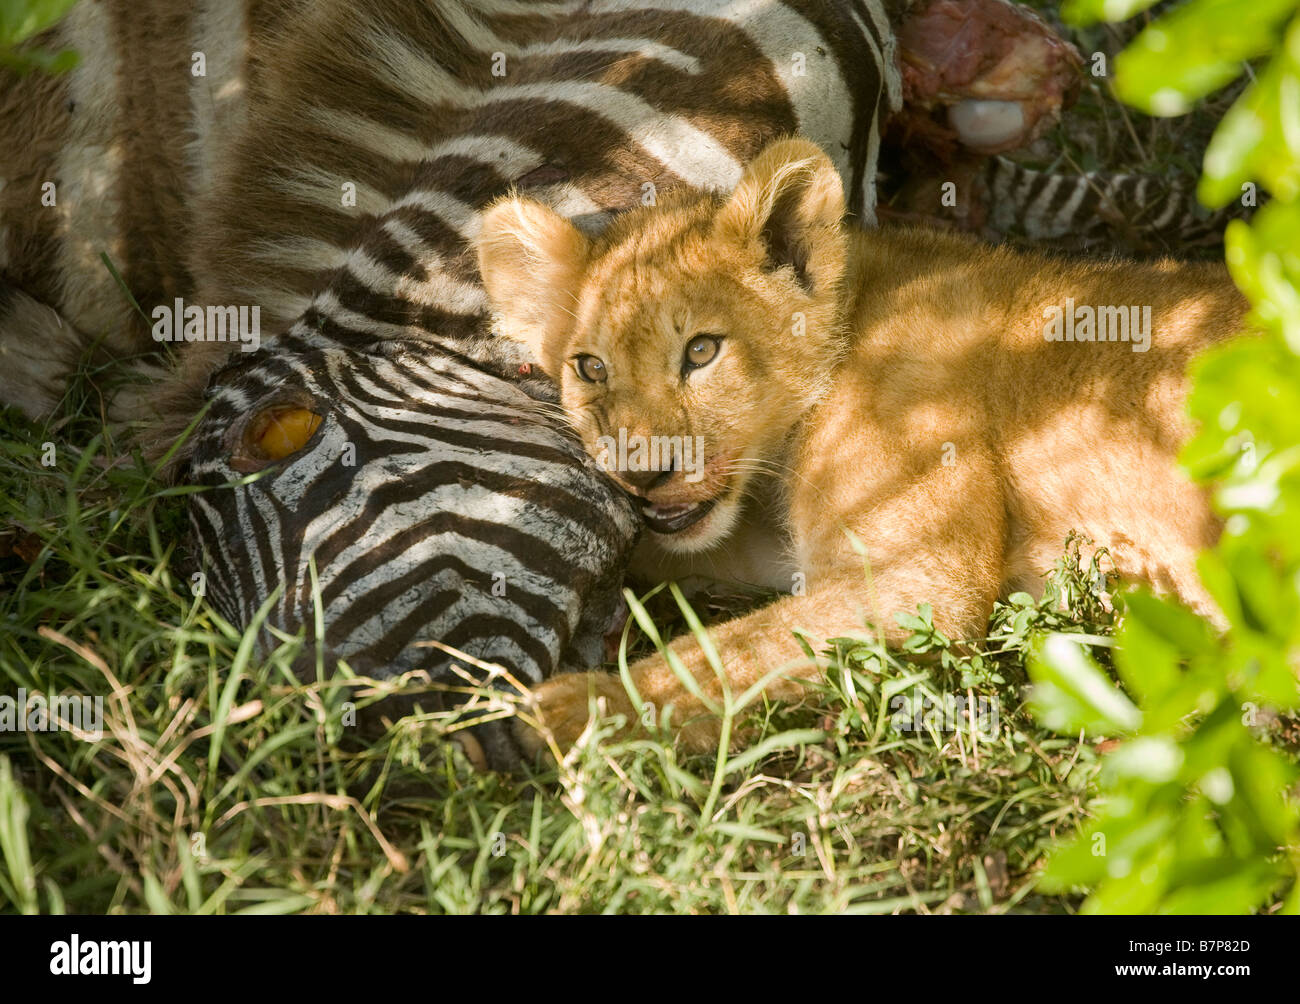 Lion cub Fütterung auf ein Zebra, dass seine Mutter in der Masai Mara in Kenia ermordet hätte. Stockfoto